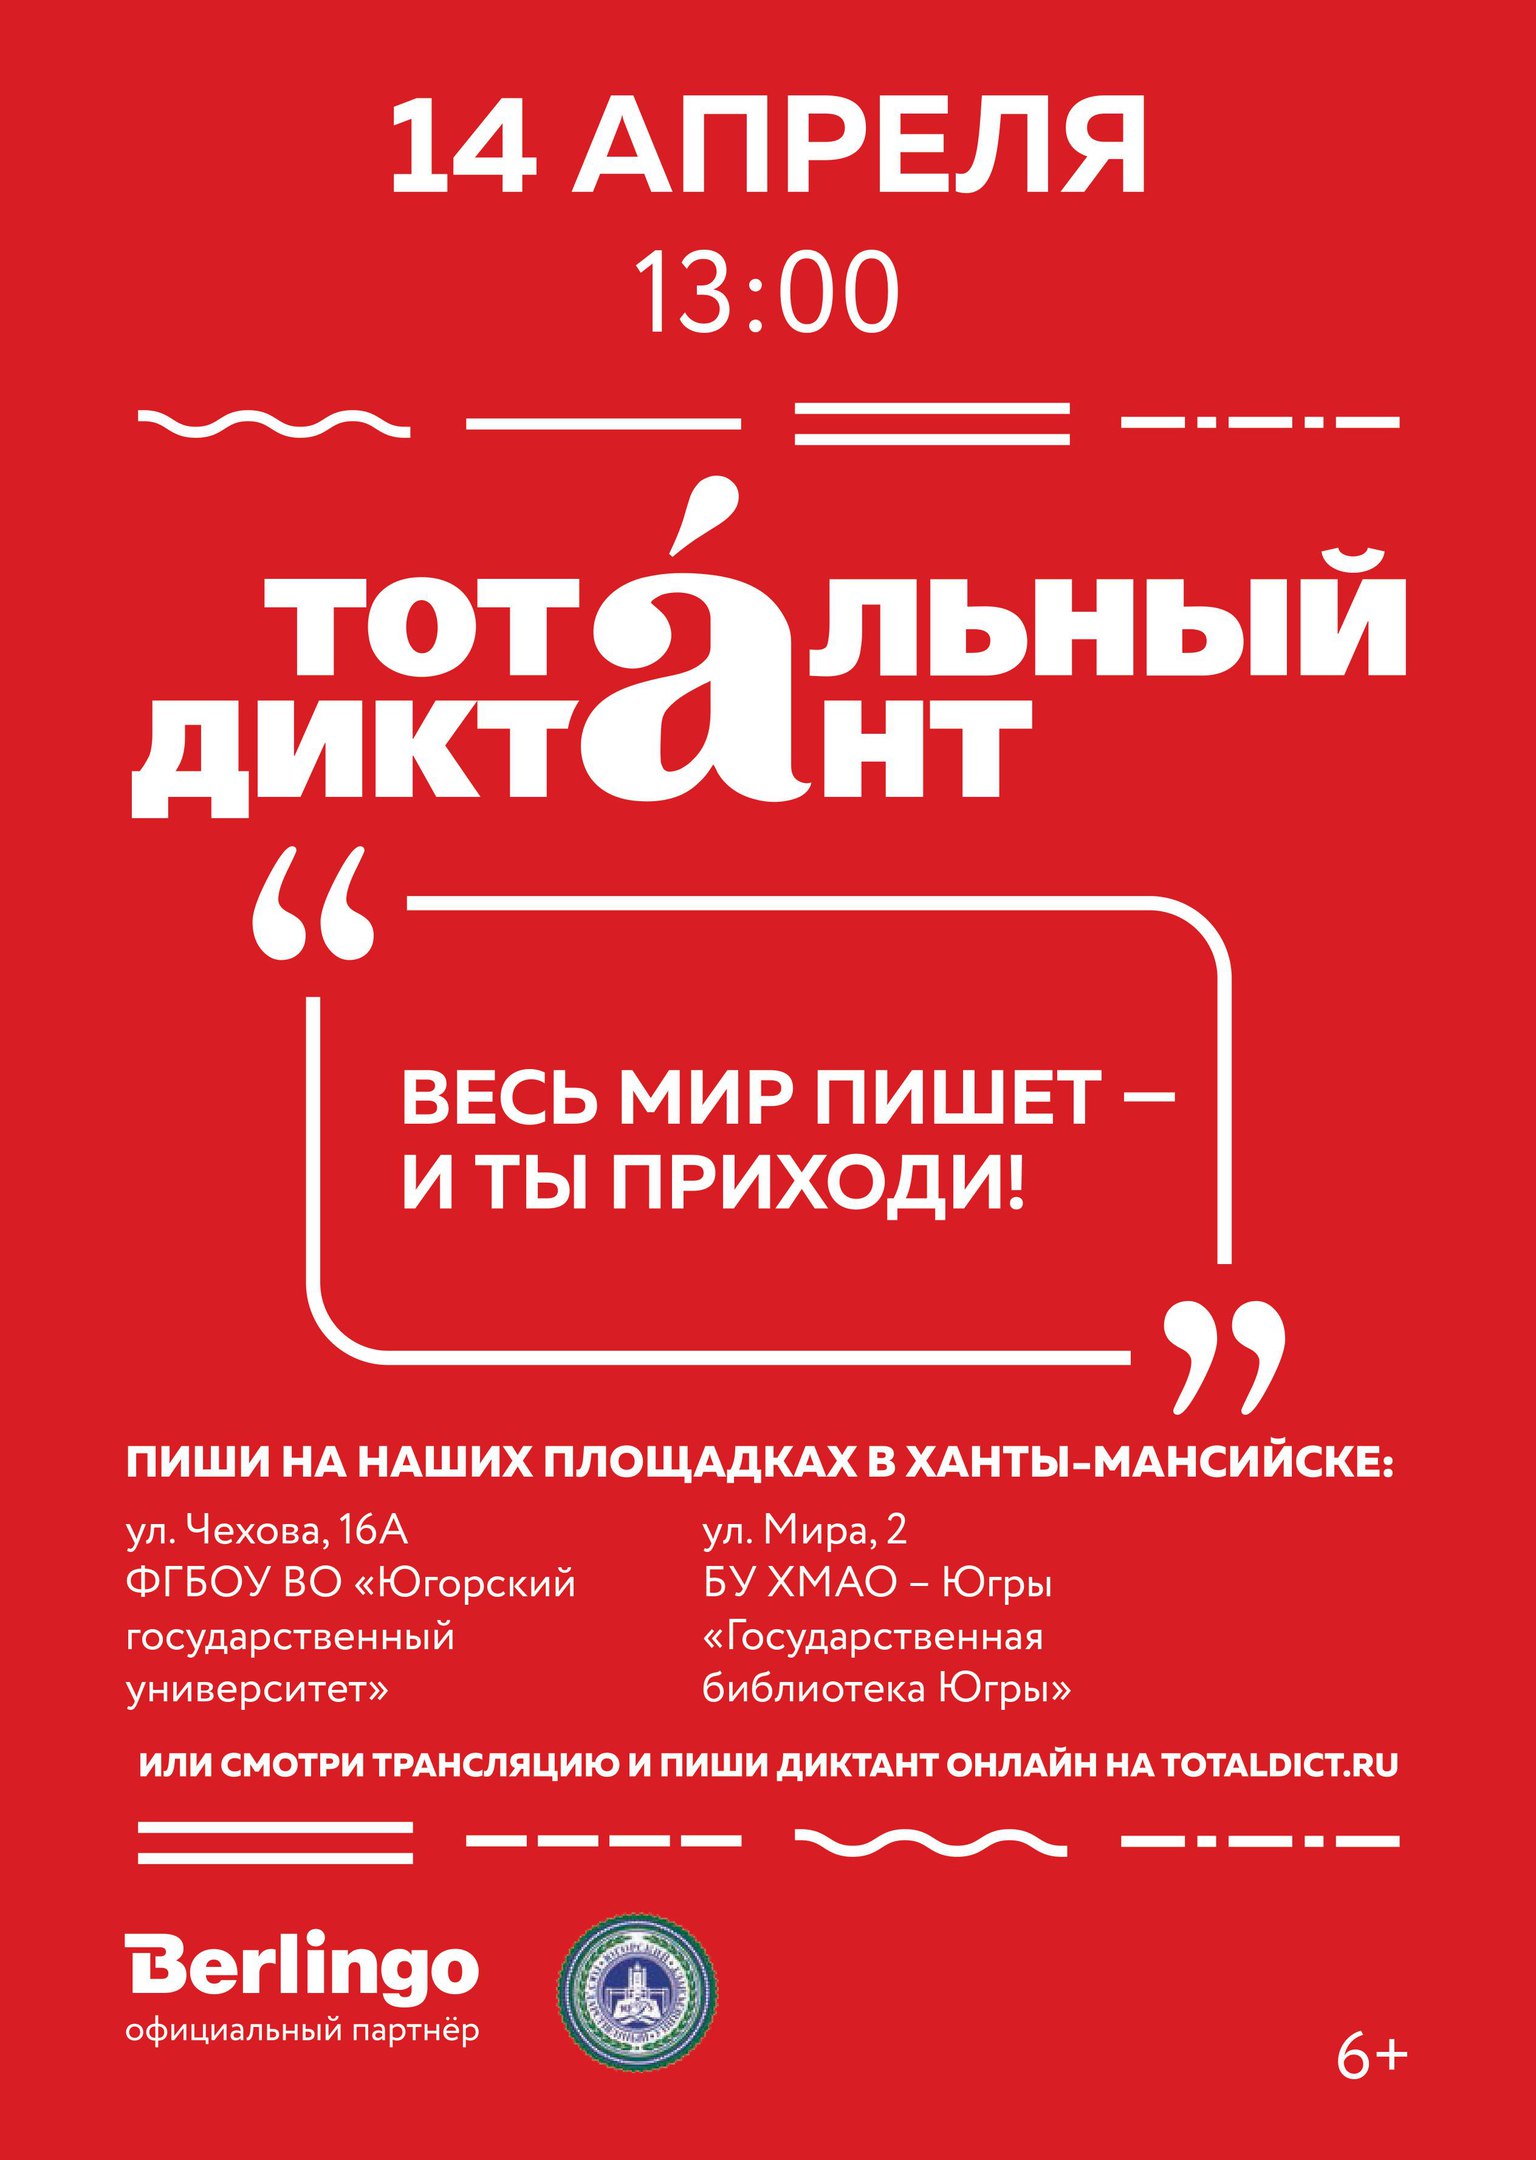 Жители Ханты-Мансийска вновь напишут Тотальный диктант